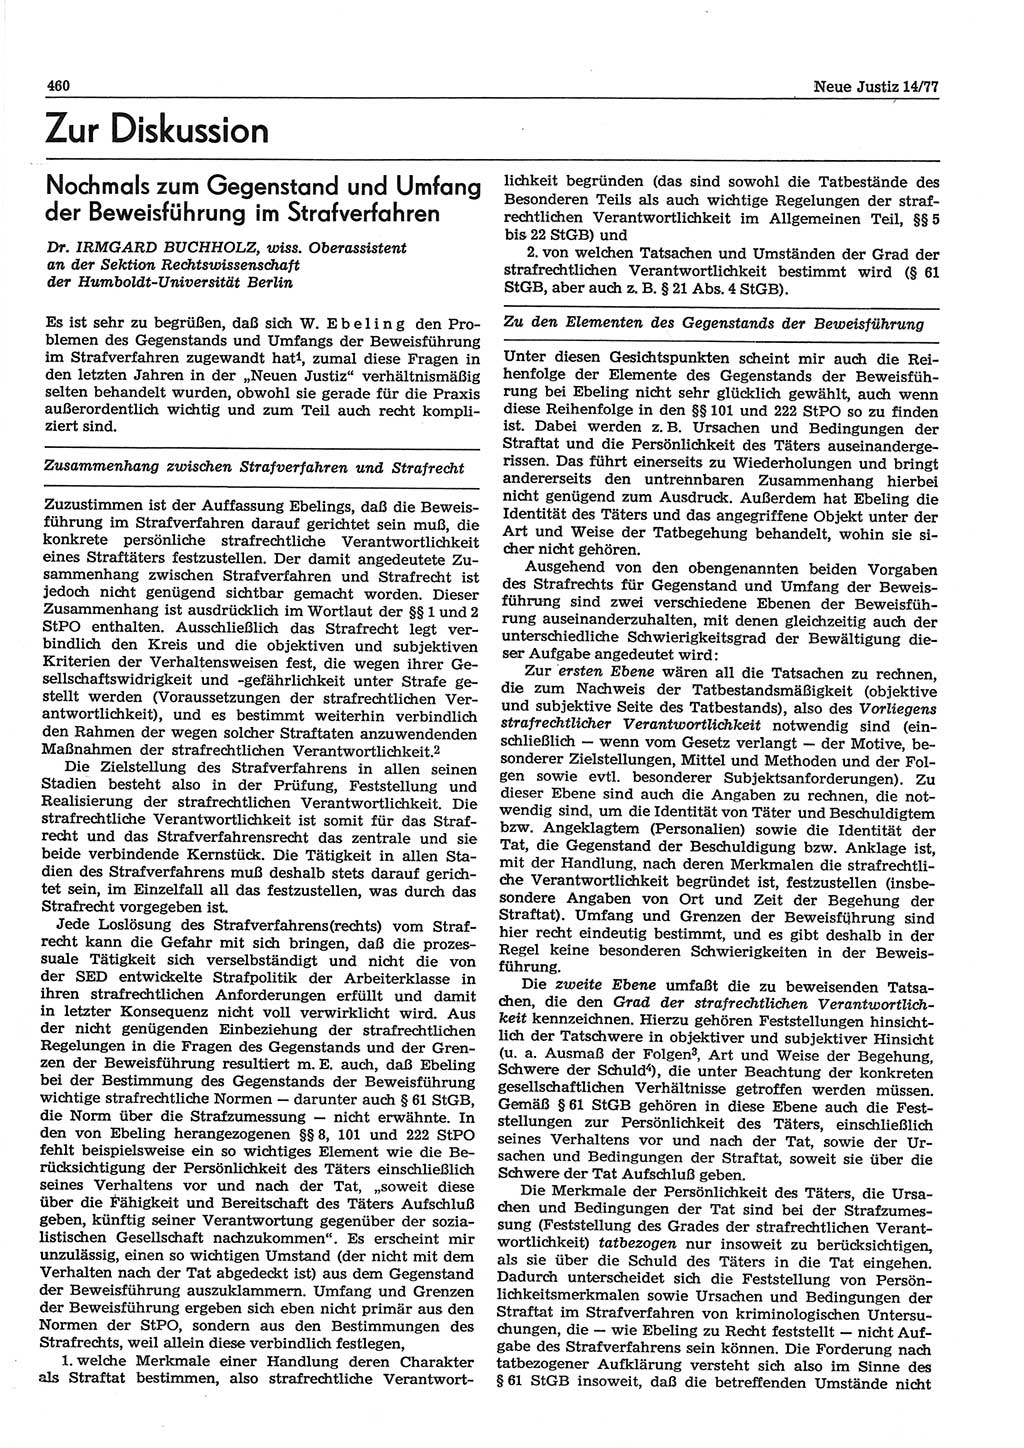 Neue Justiz (NJ), Zeitschrift für Recht und Rechtswissenschaft-Zeitschrift, sozialistisches Recht und Gesetzlichkeit, 31. Jahrgang 1977, Seite 460 (NJ DDR 1977, S. 460)